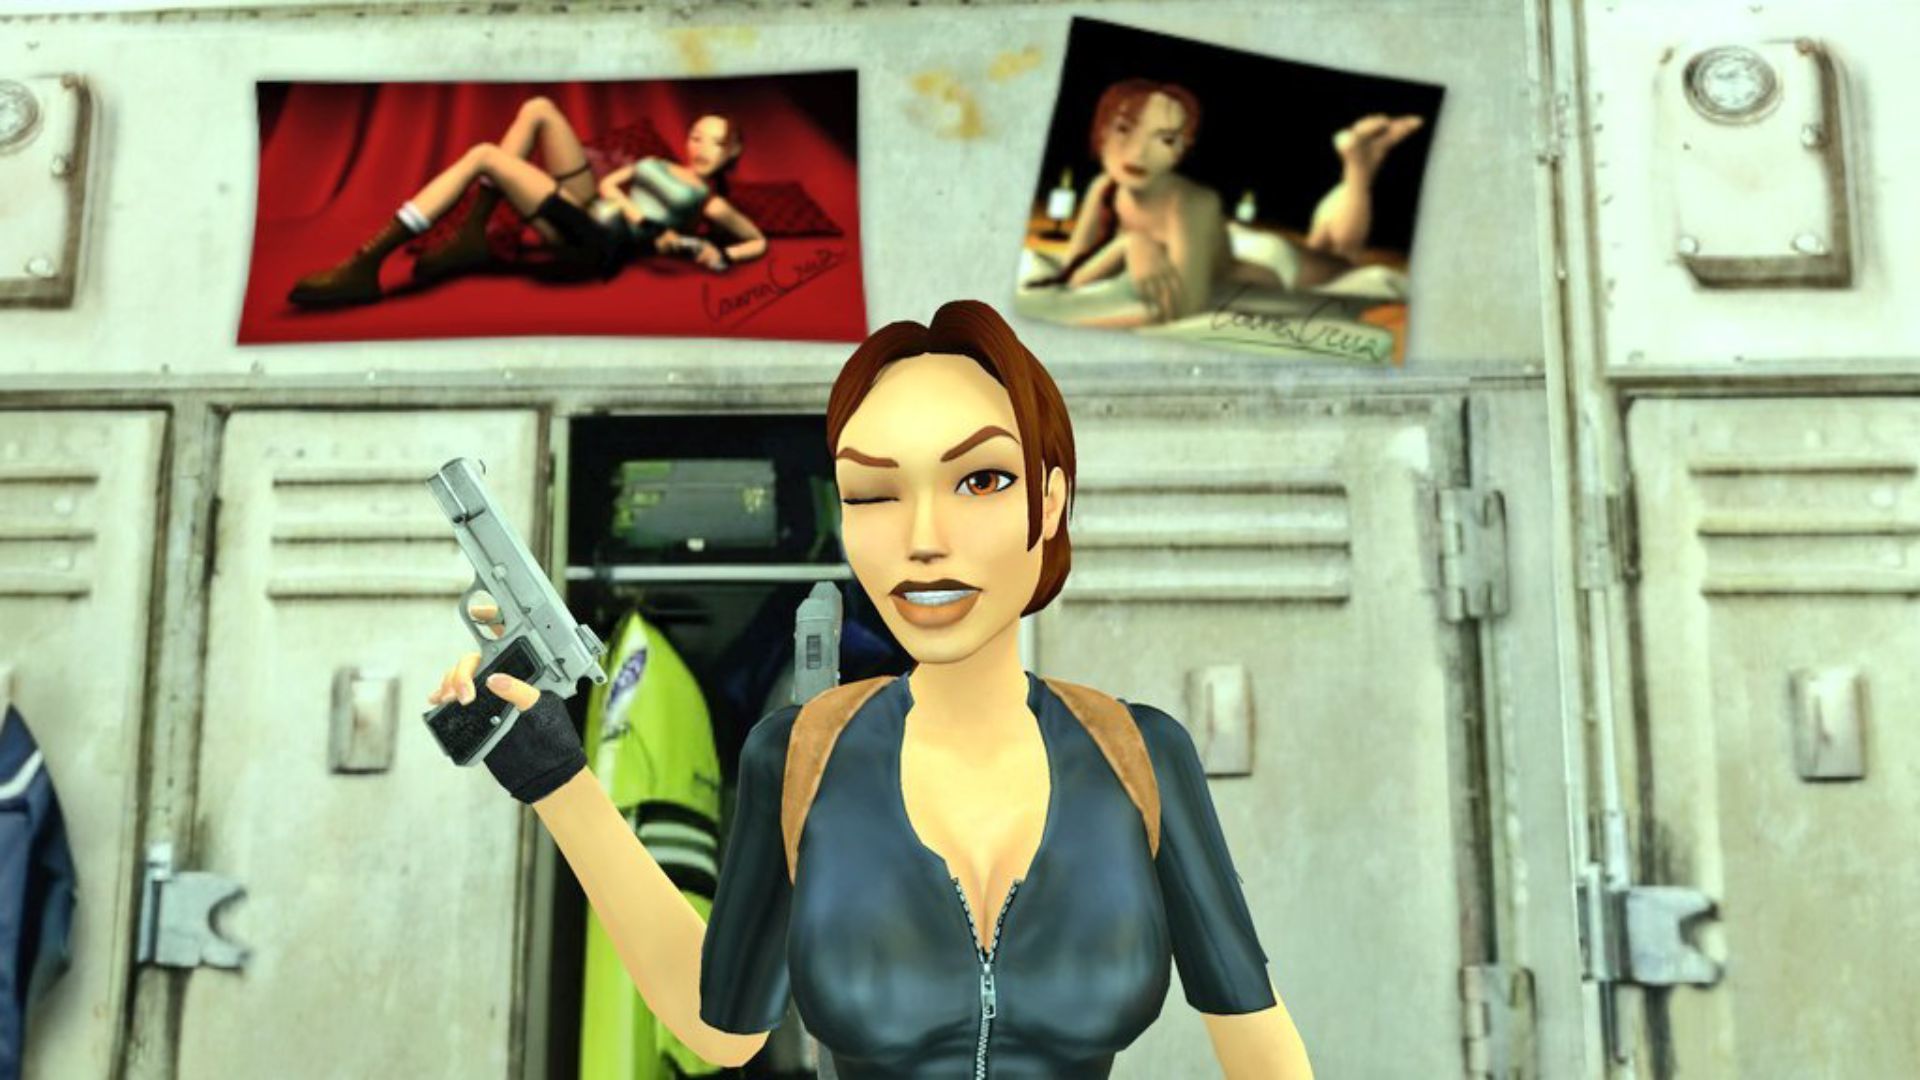 Сексуальные фото Лары Крофт подверглись цензуре в обновлении Tomb Raider Remastered, что разозлило фанатов